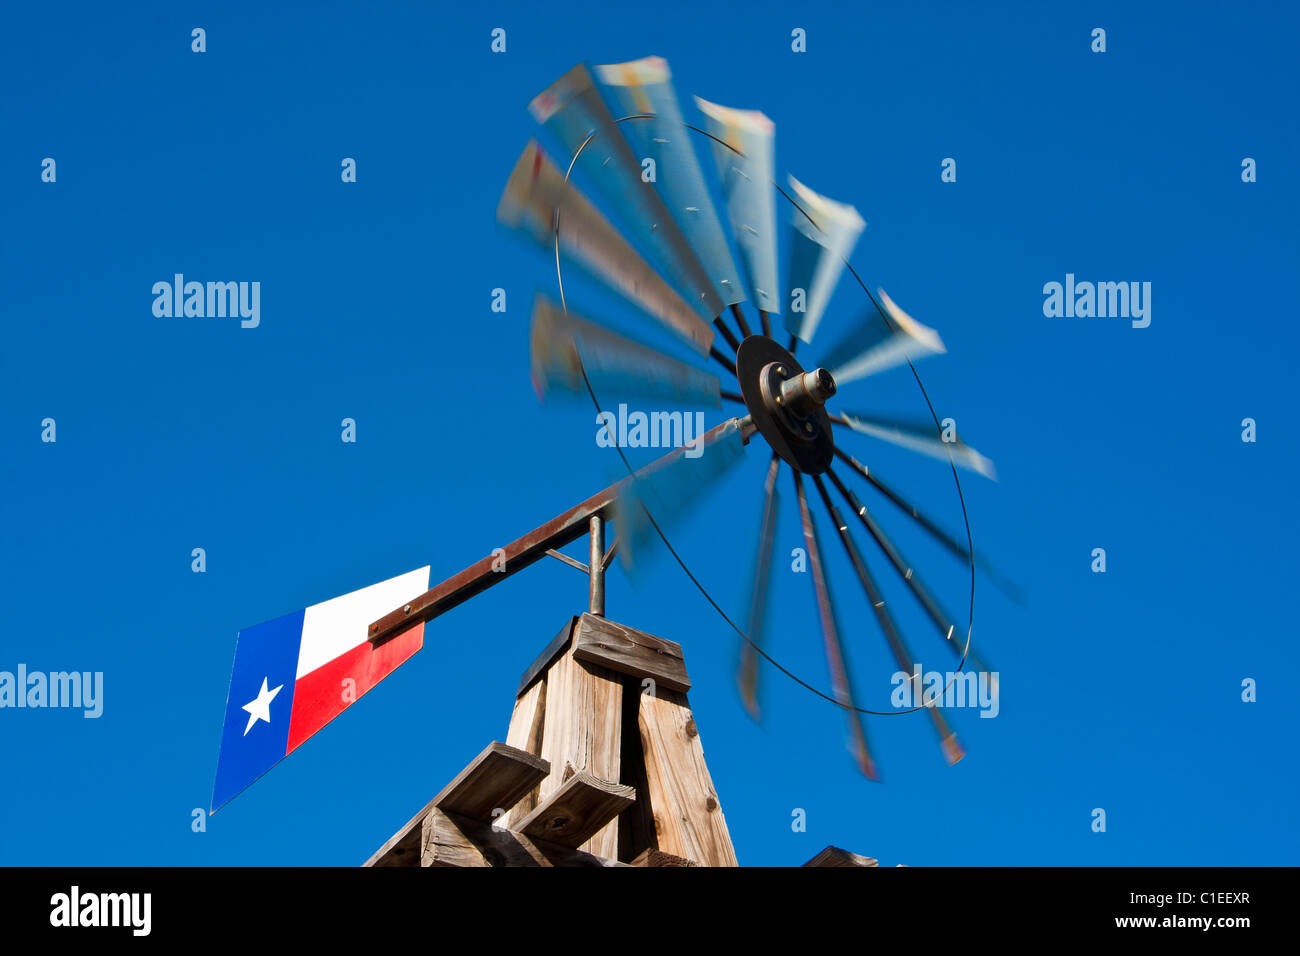 Un moulin à vent avec un drapeau du Texas, que l'on retrouve normalement sur une ferme, monté à l'avant de l'historique hôtel Rogers, San Marcos, Texas. Banque D'Images